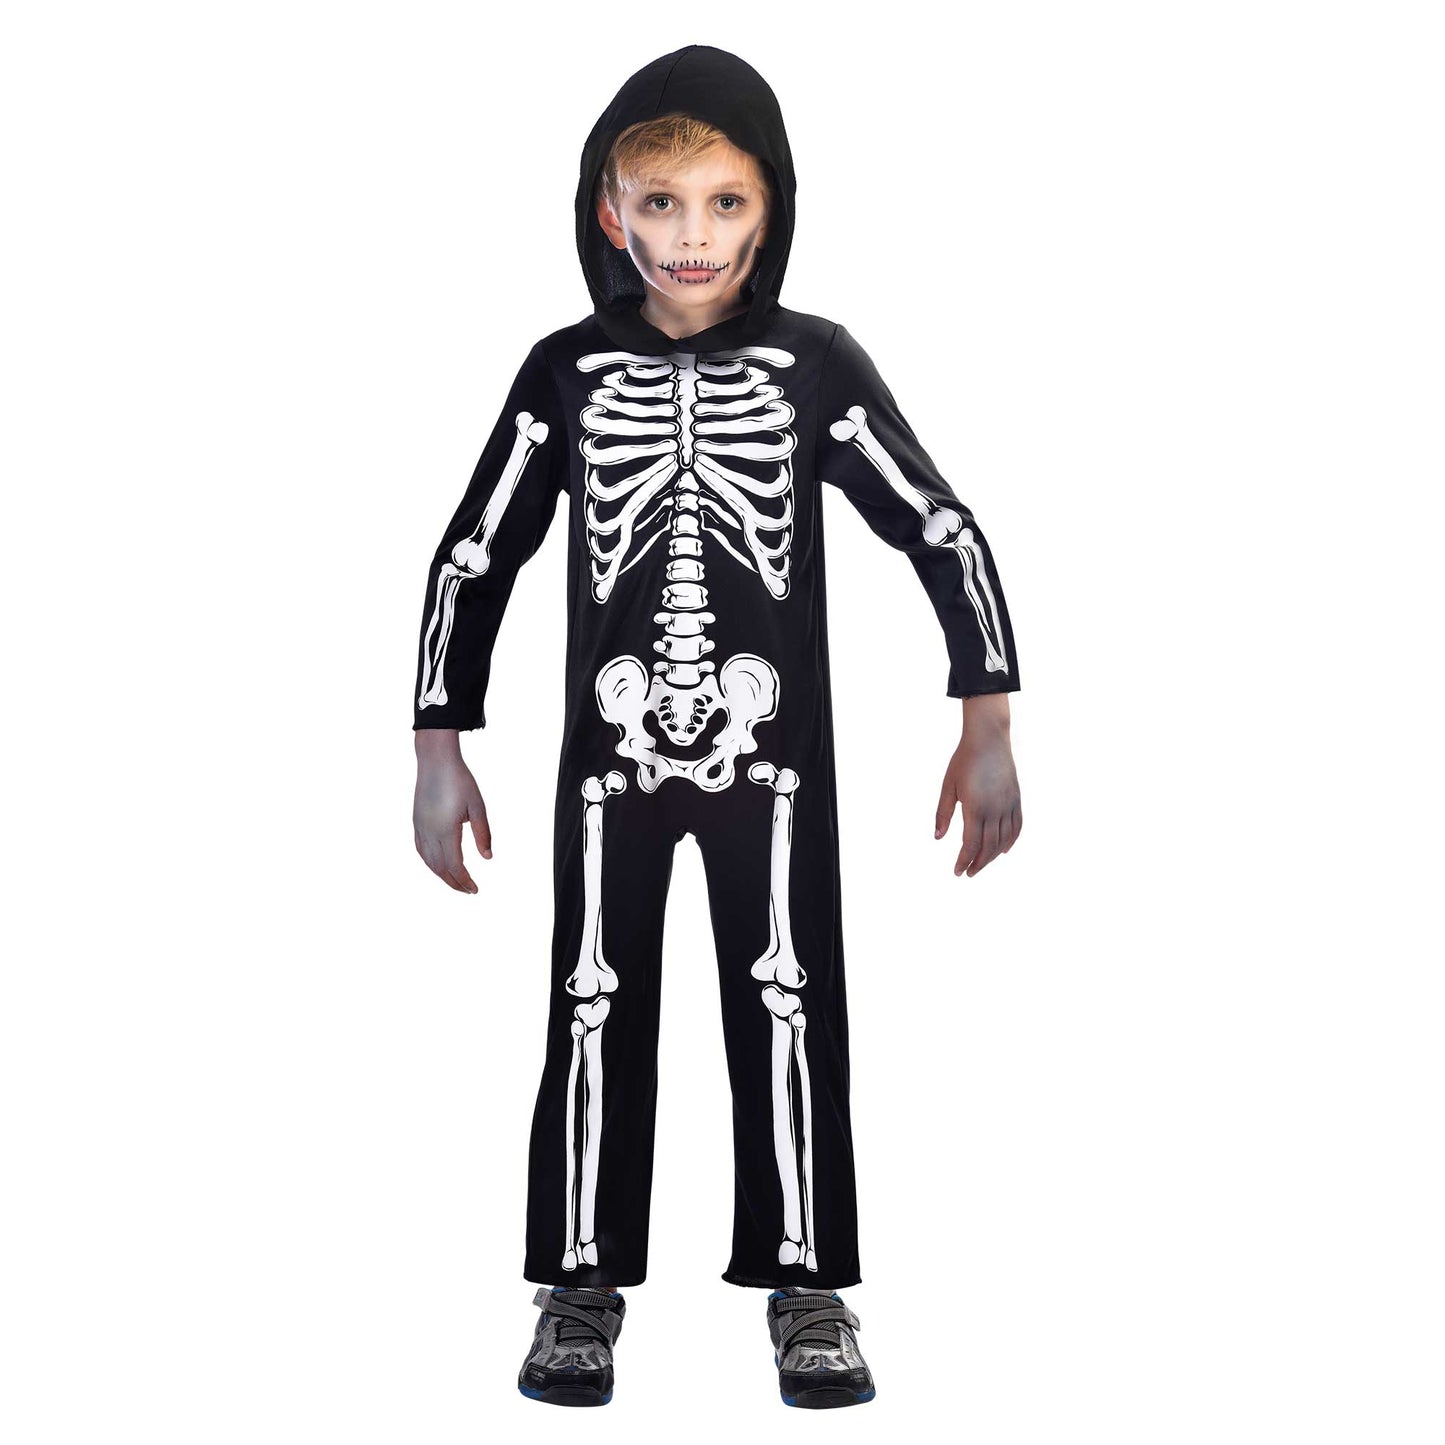 Costume Skeleton Jumpsuit 8-10 Years